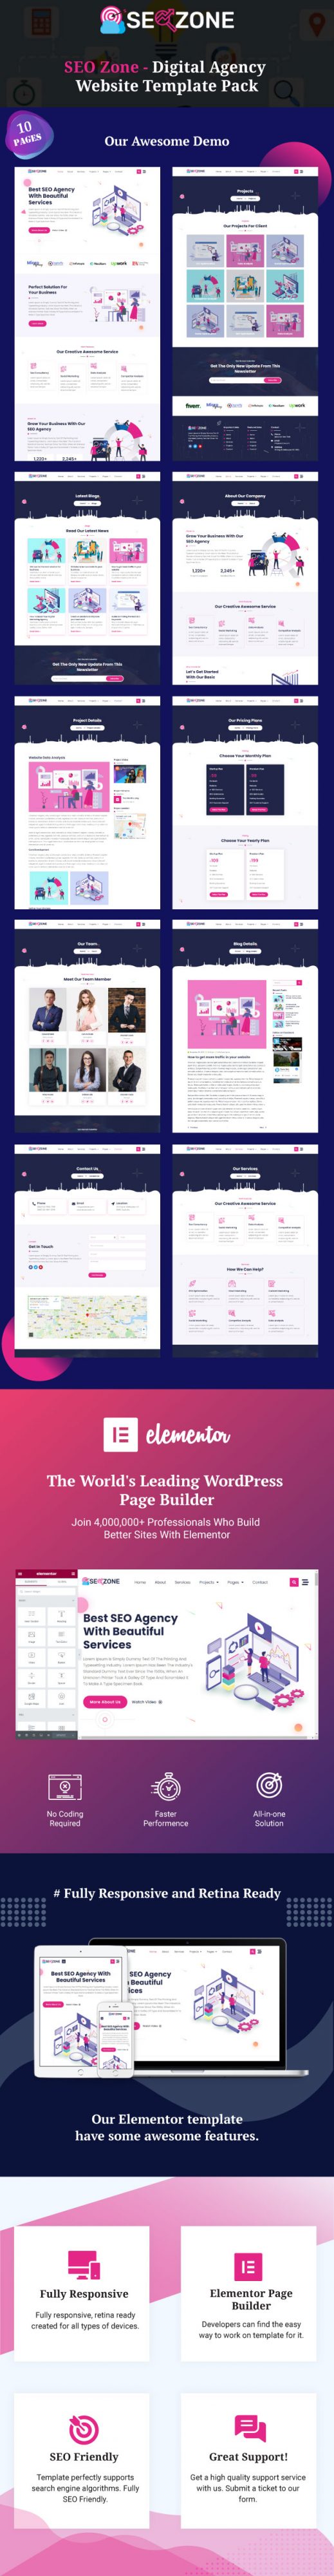 seo-zone-digital-agency-website-template-pack